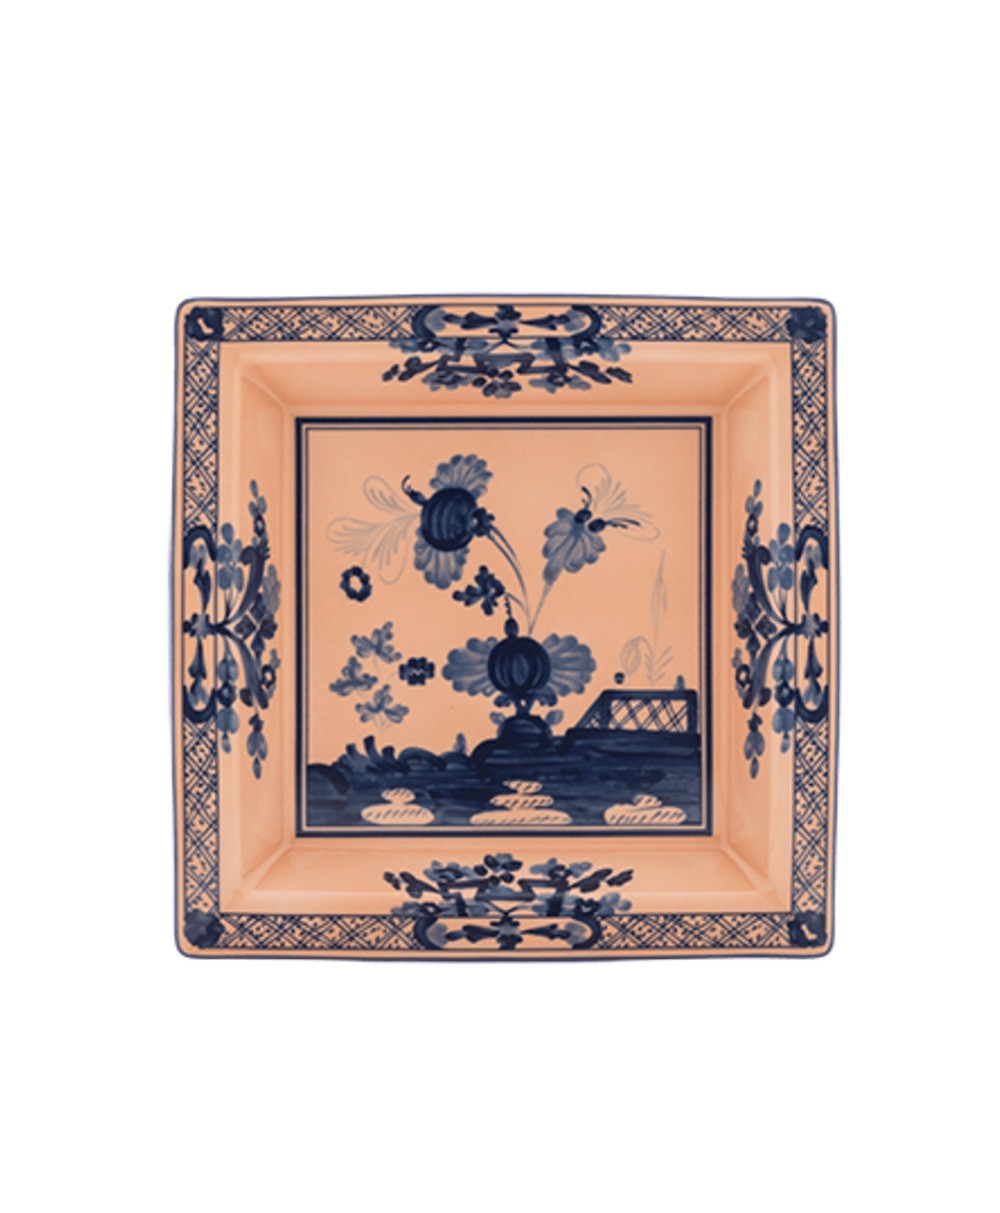 Produktbild "Oriente Cipria Platte" von Ginori 1735 im RAUM Concept store